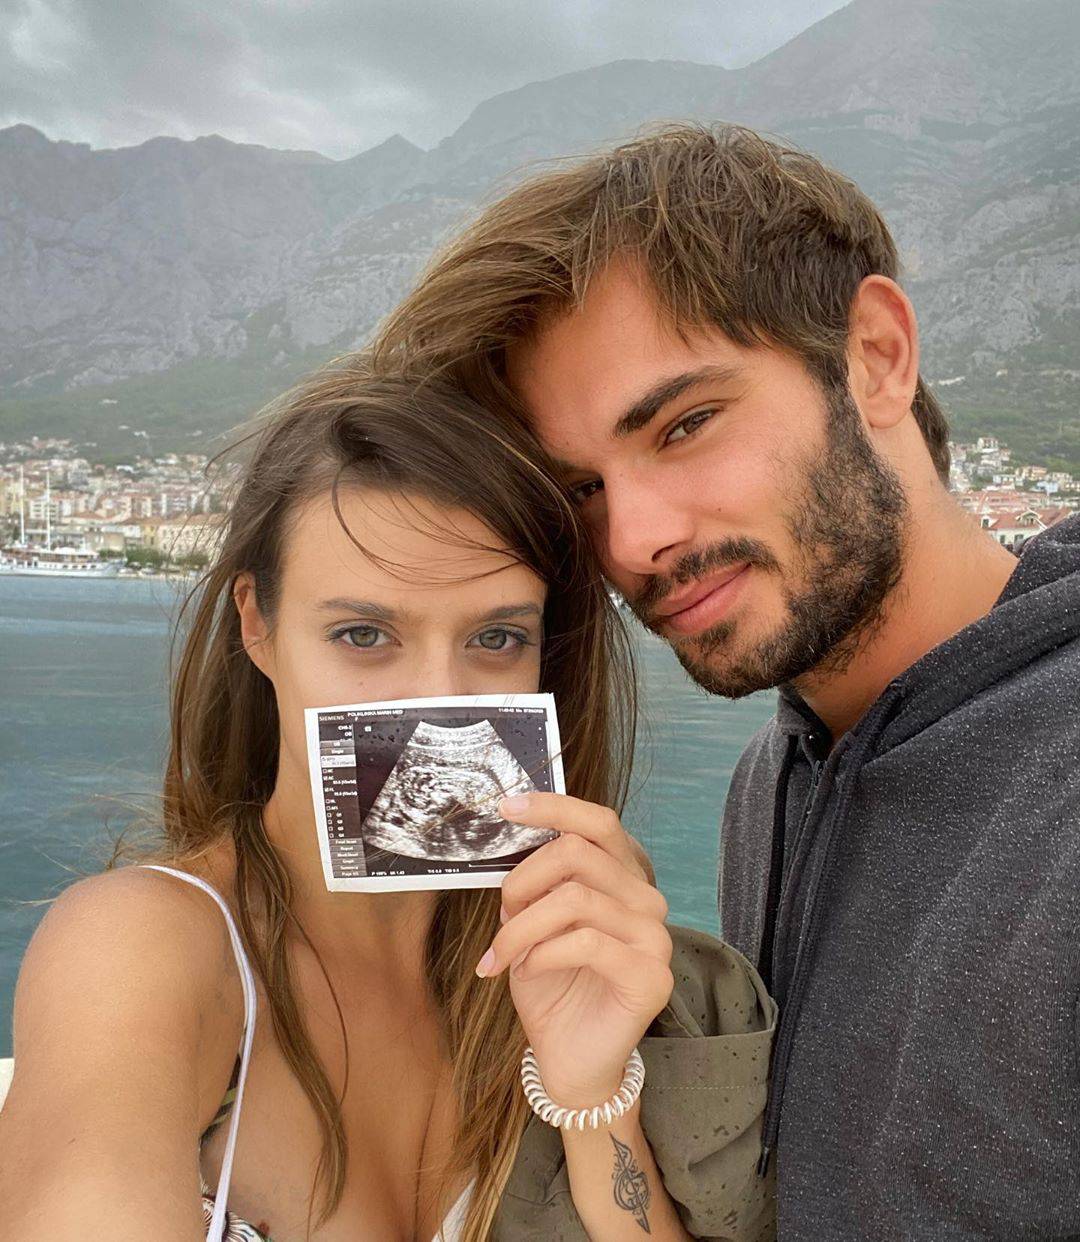 Glumac Lujo Kunčević postat će otac: Pokazali fotku ultrazvuka